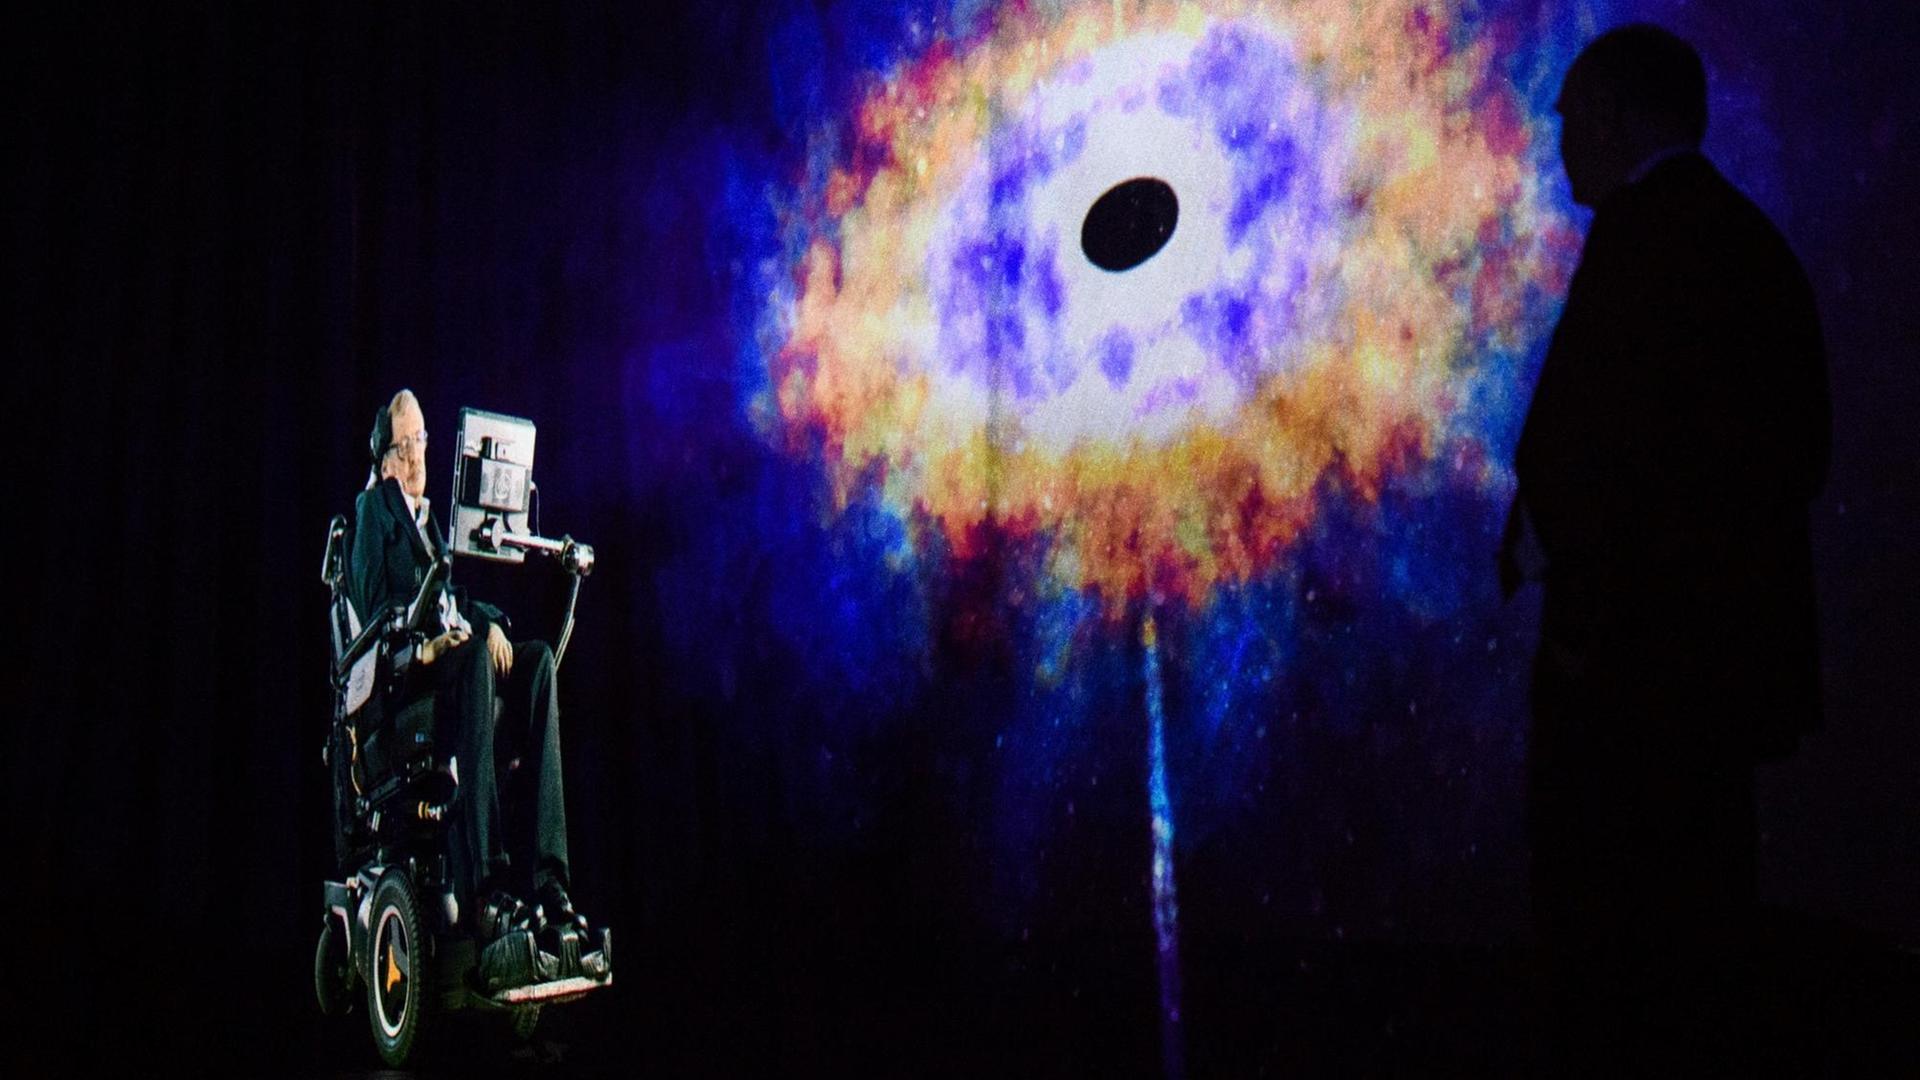 Der weltberühmte Physiker Stephen Hawking spricht zu einem Publikum in Hong Kong per Hologramm von seinem Büro in Cambridge, England aus.